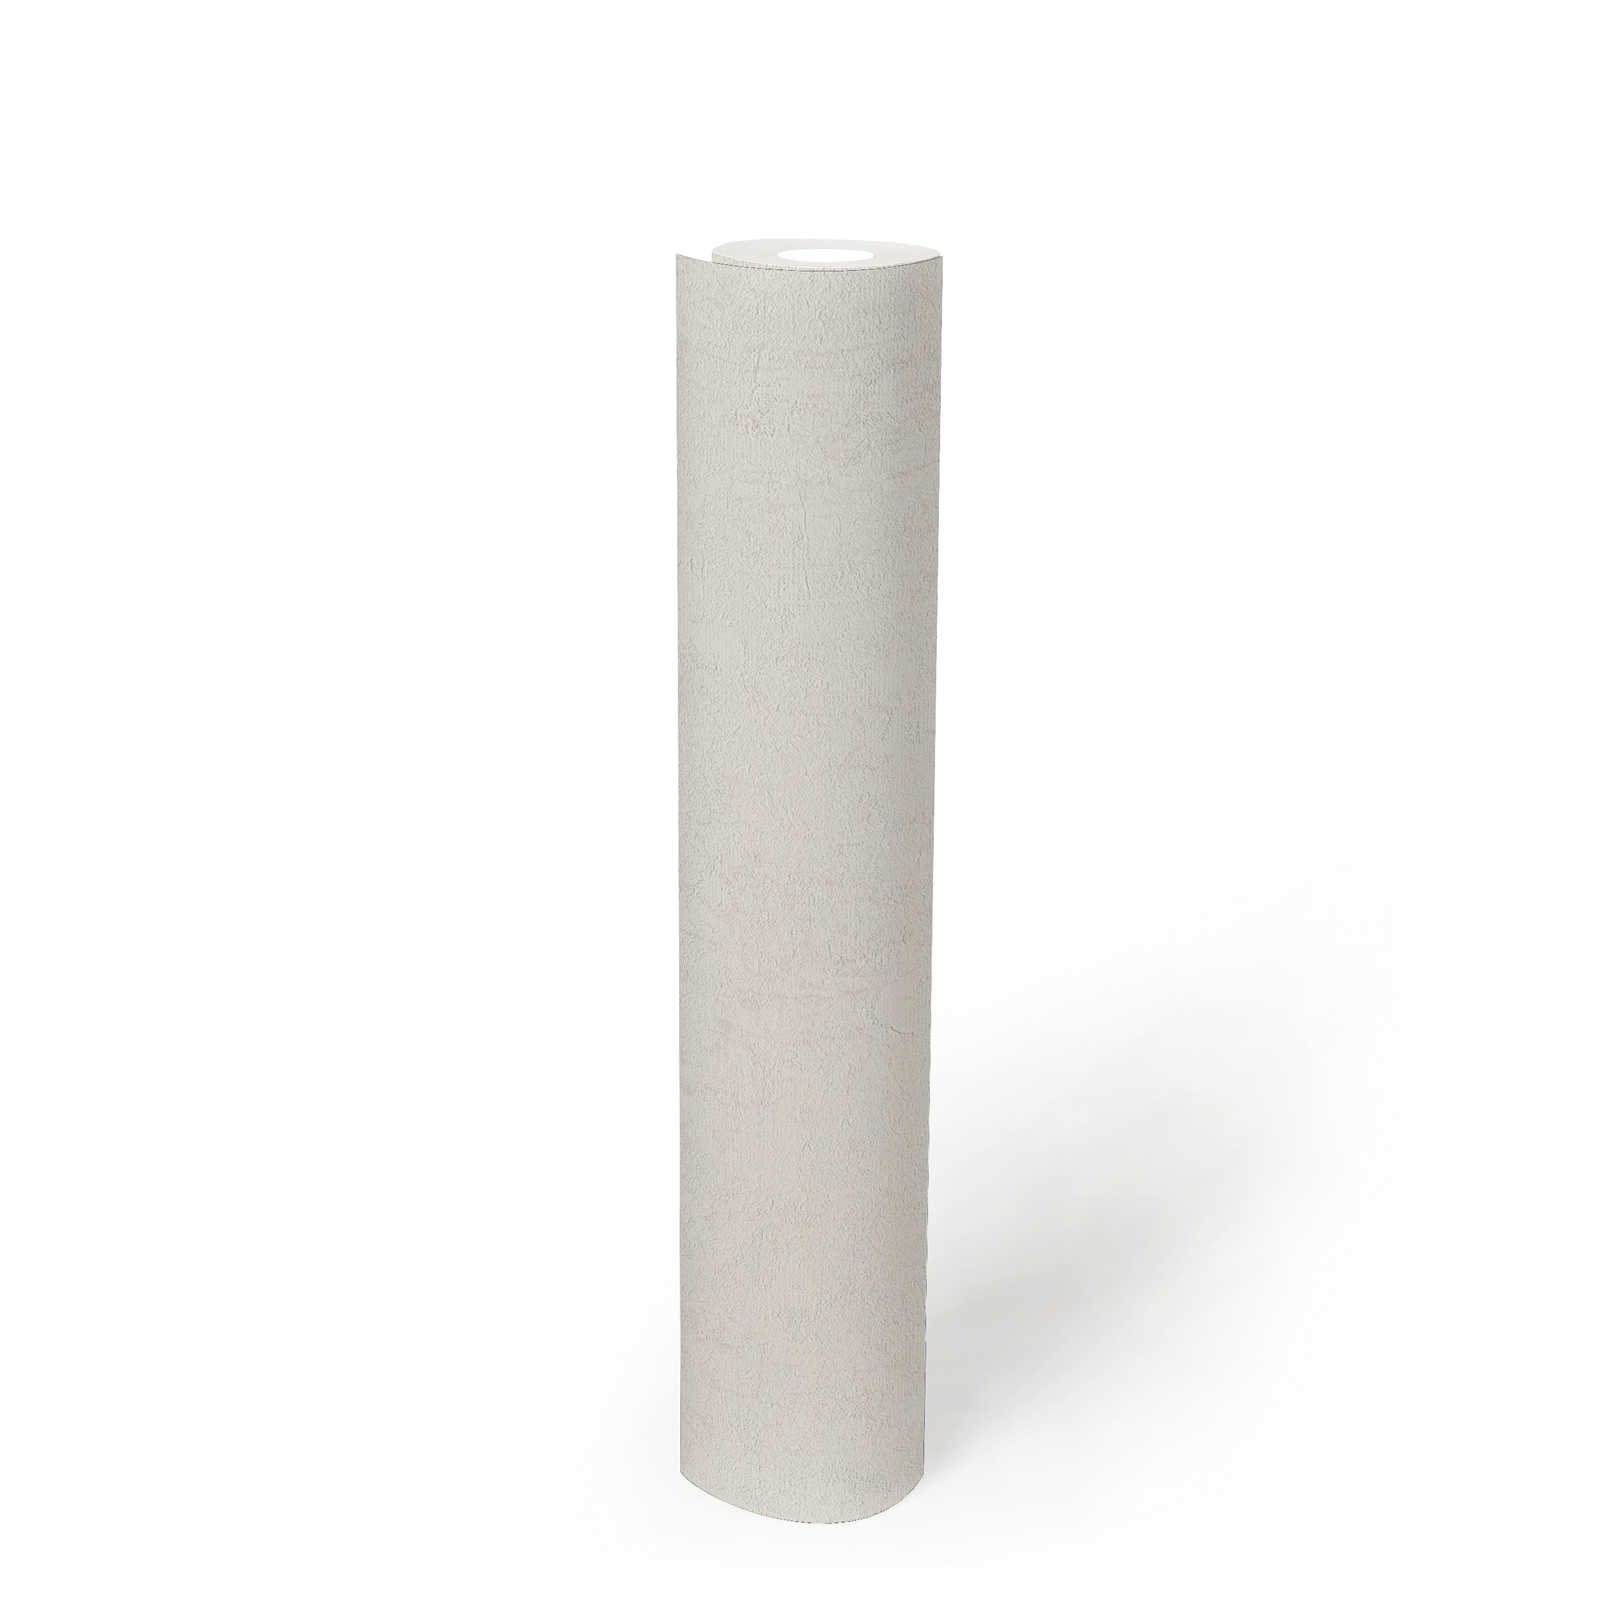             Papier peint imitation plâtre blanc crème avec design usé - métallique, blanc
        